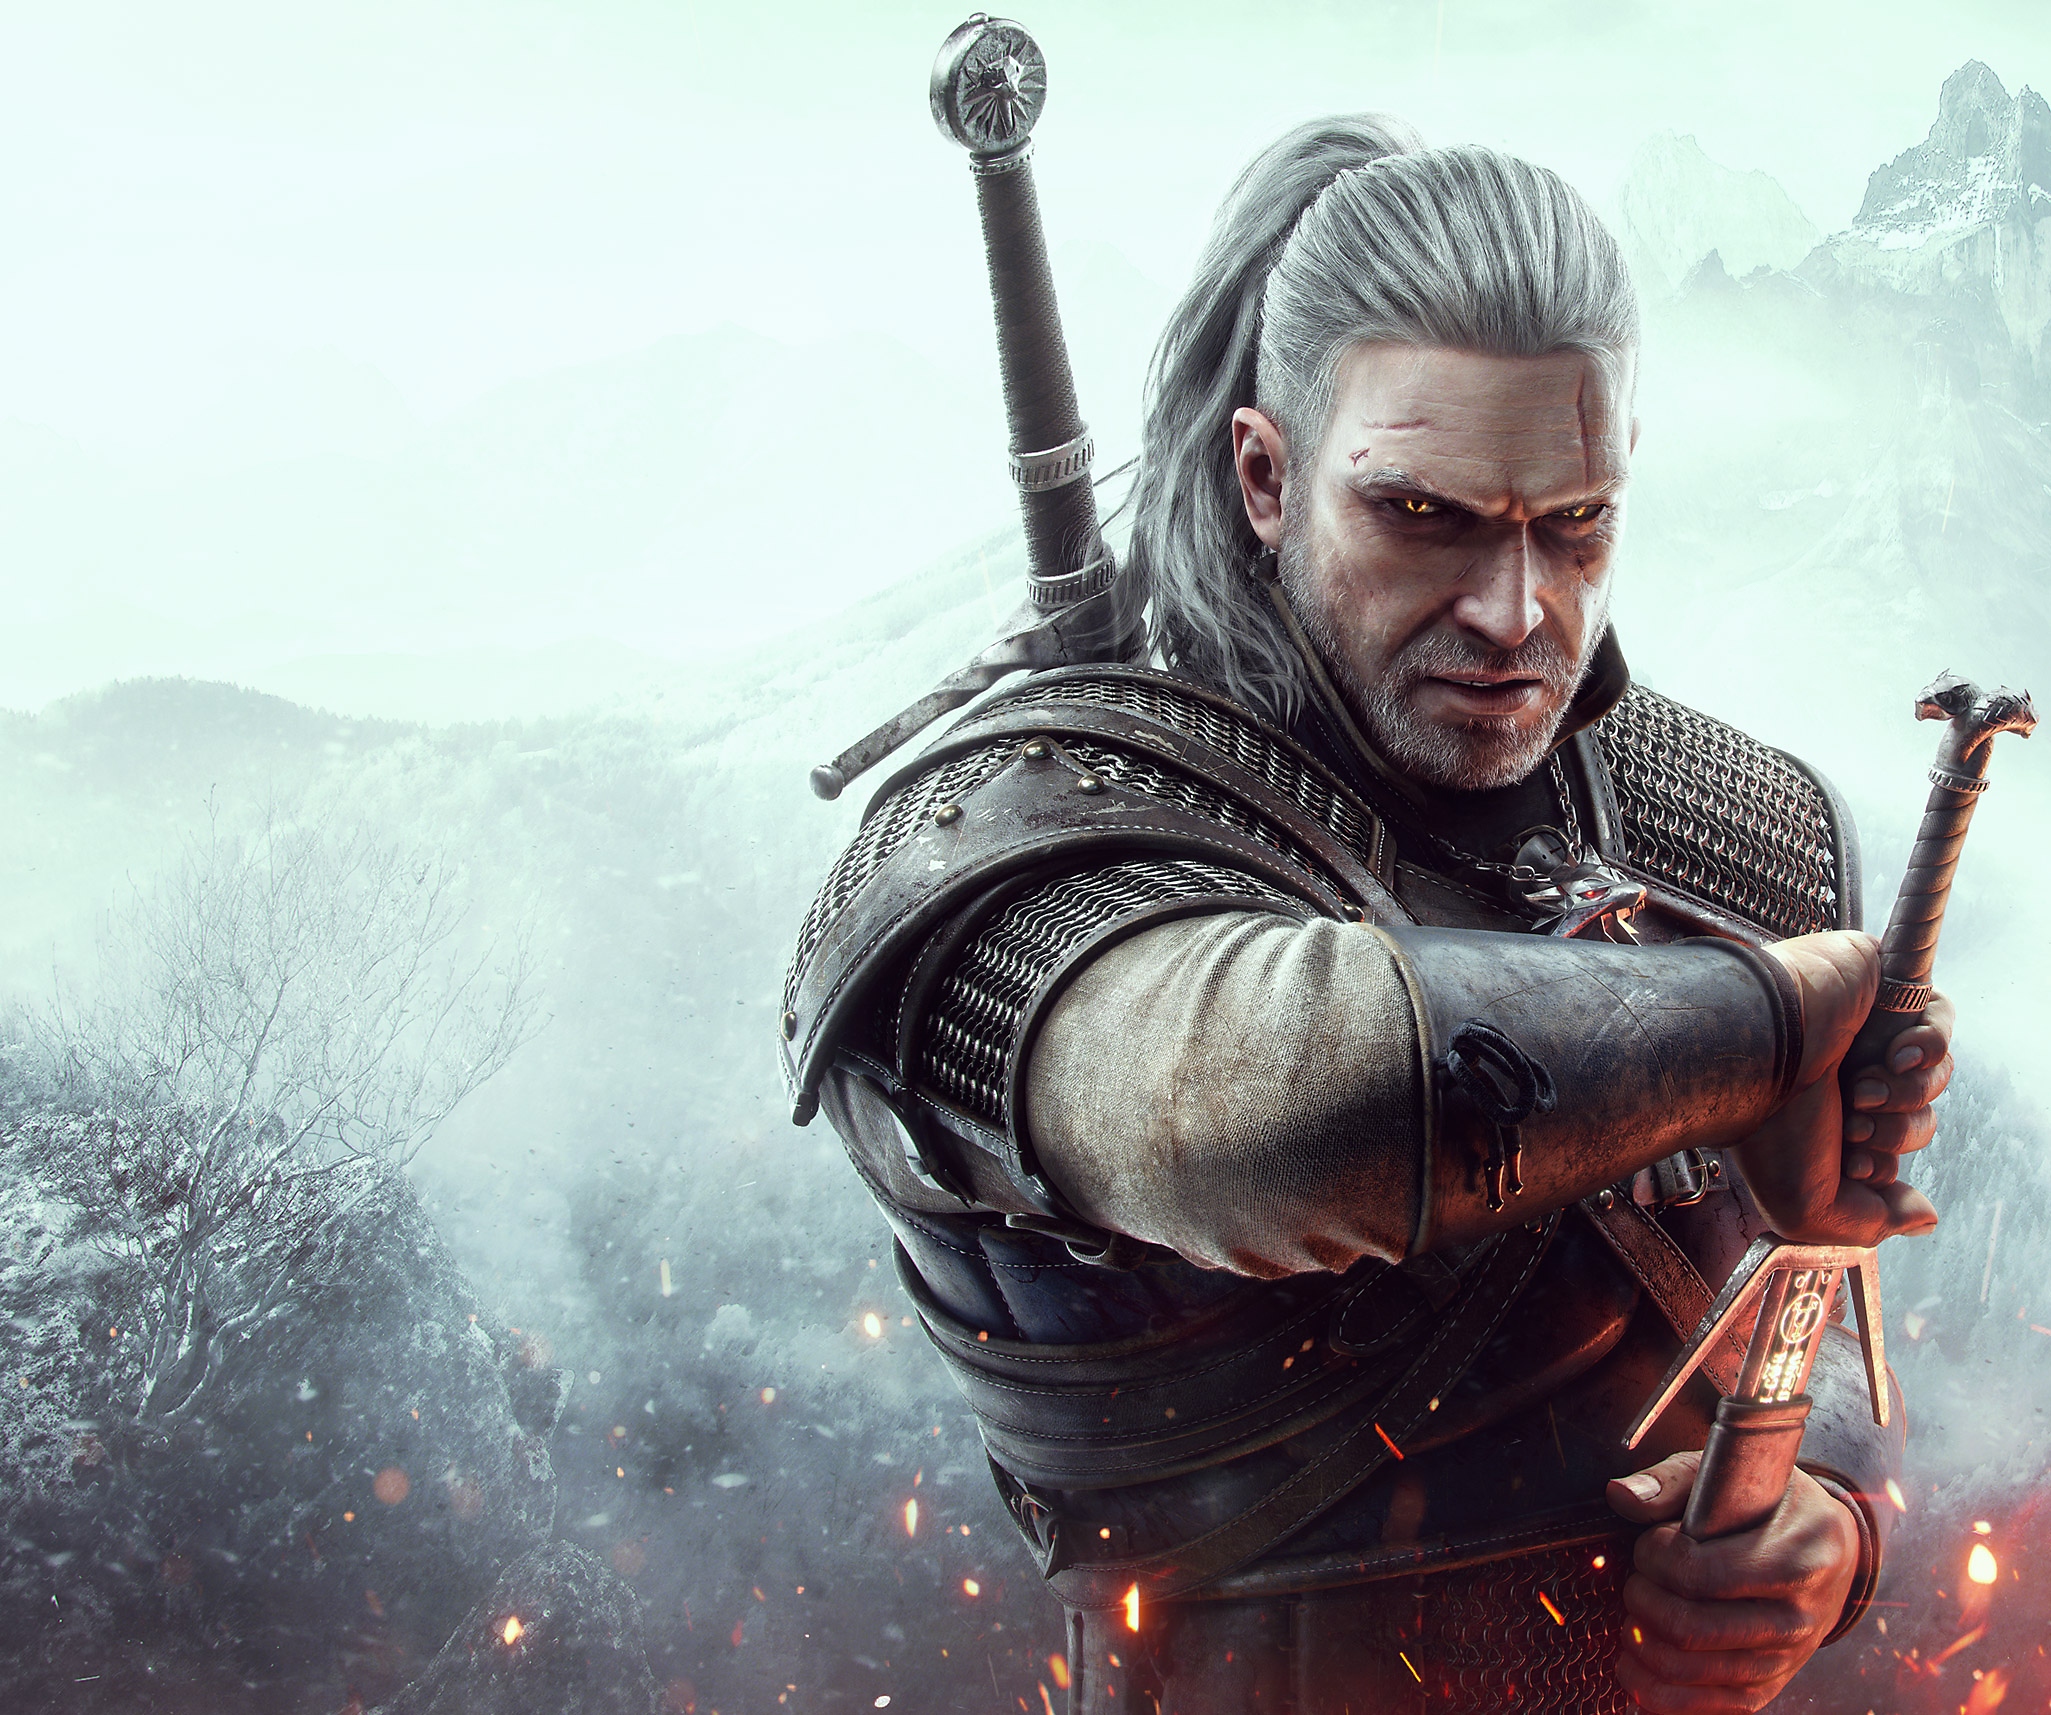 Image de The Witcher 3 - Geralt de Riv, personnage principal, tirant son épée.